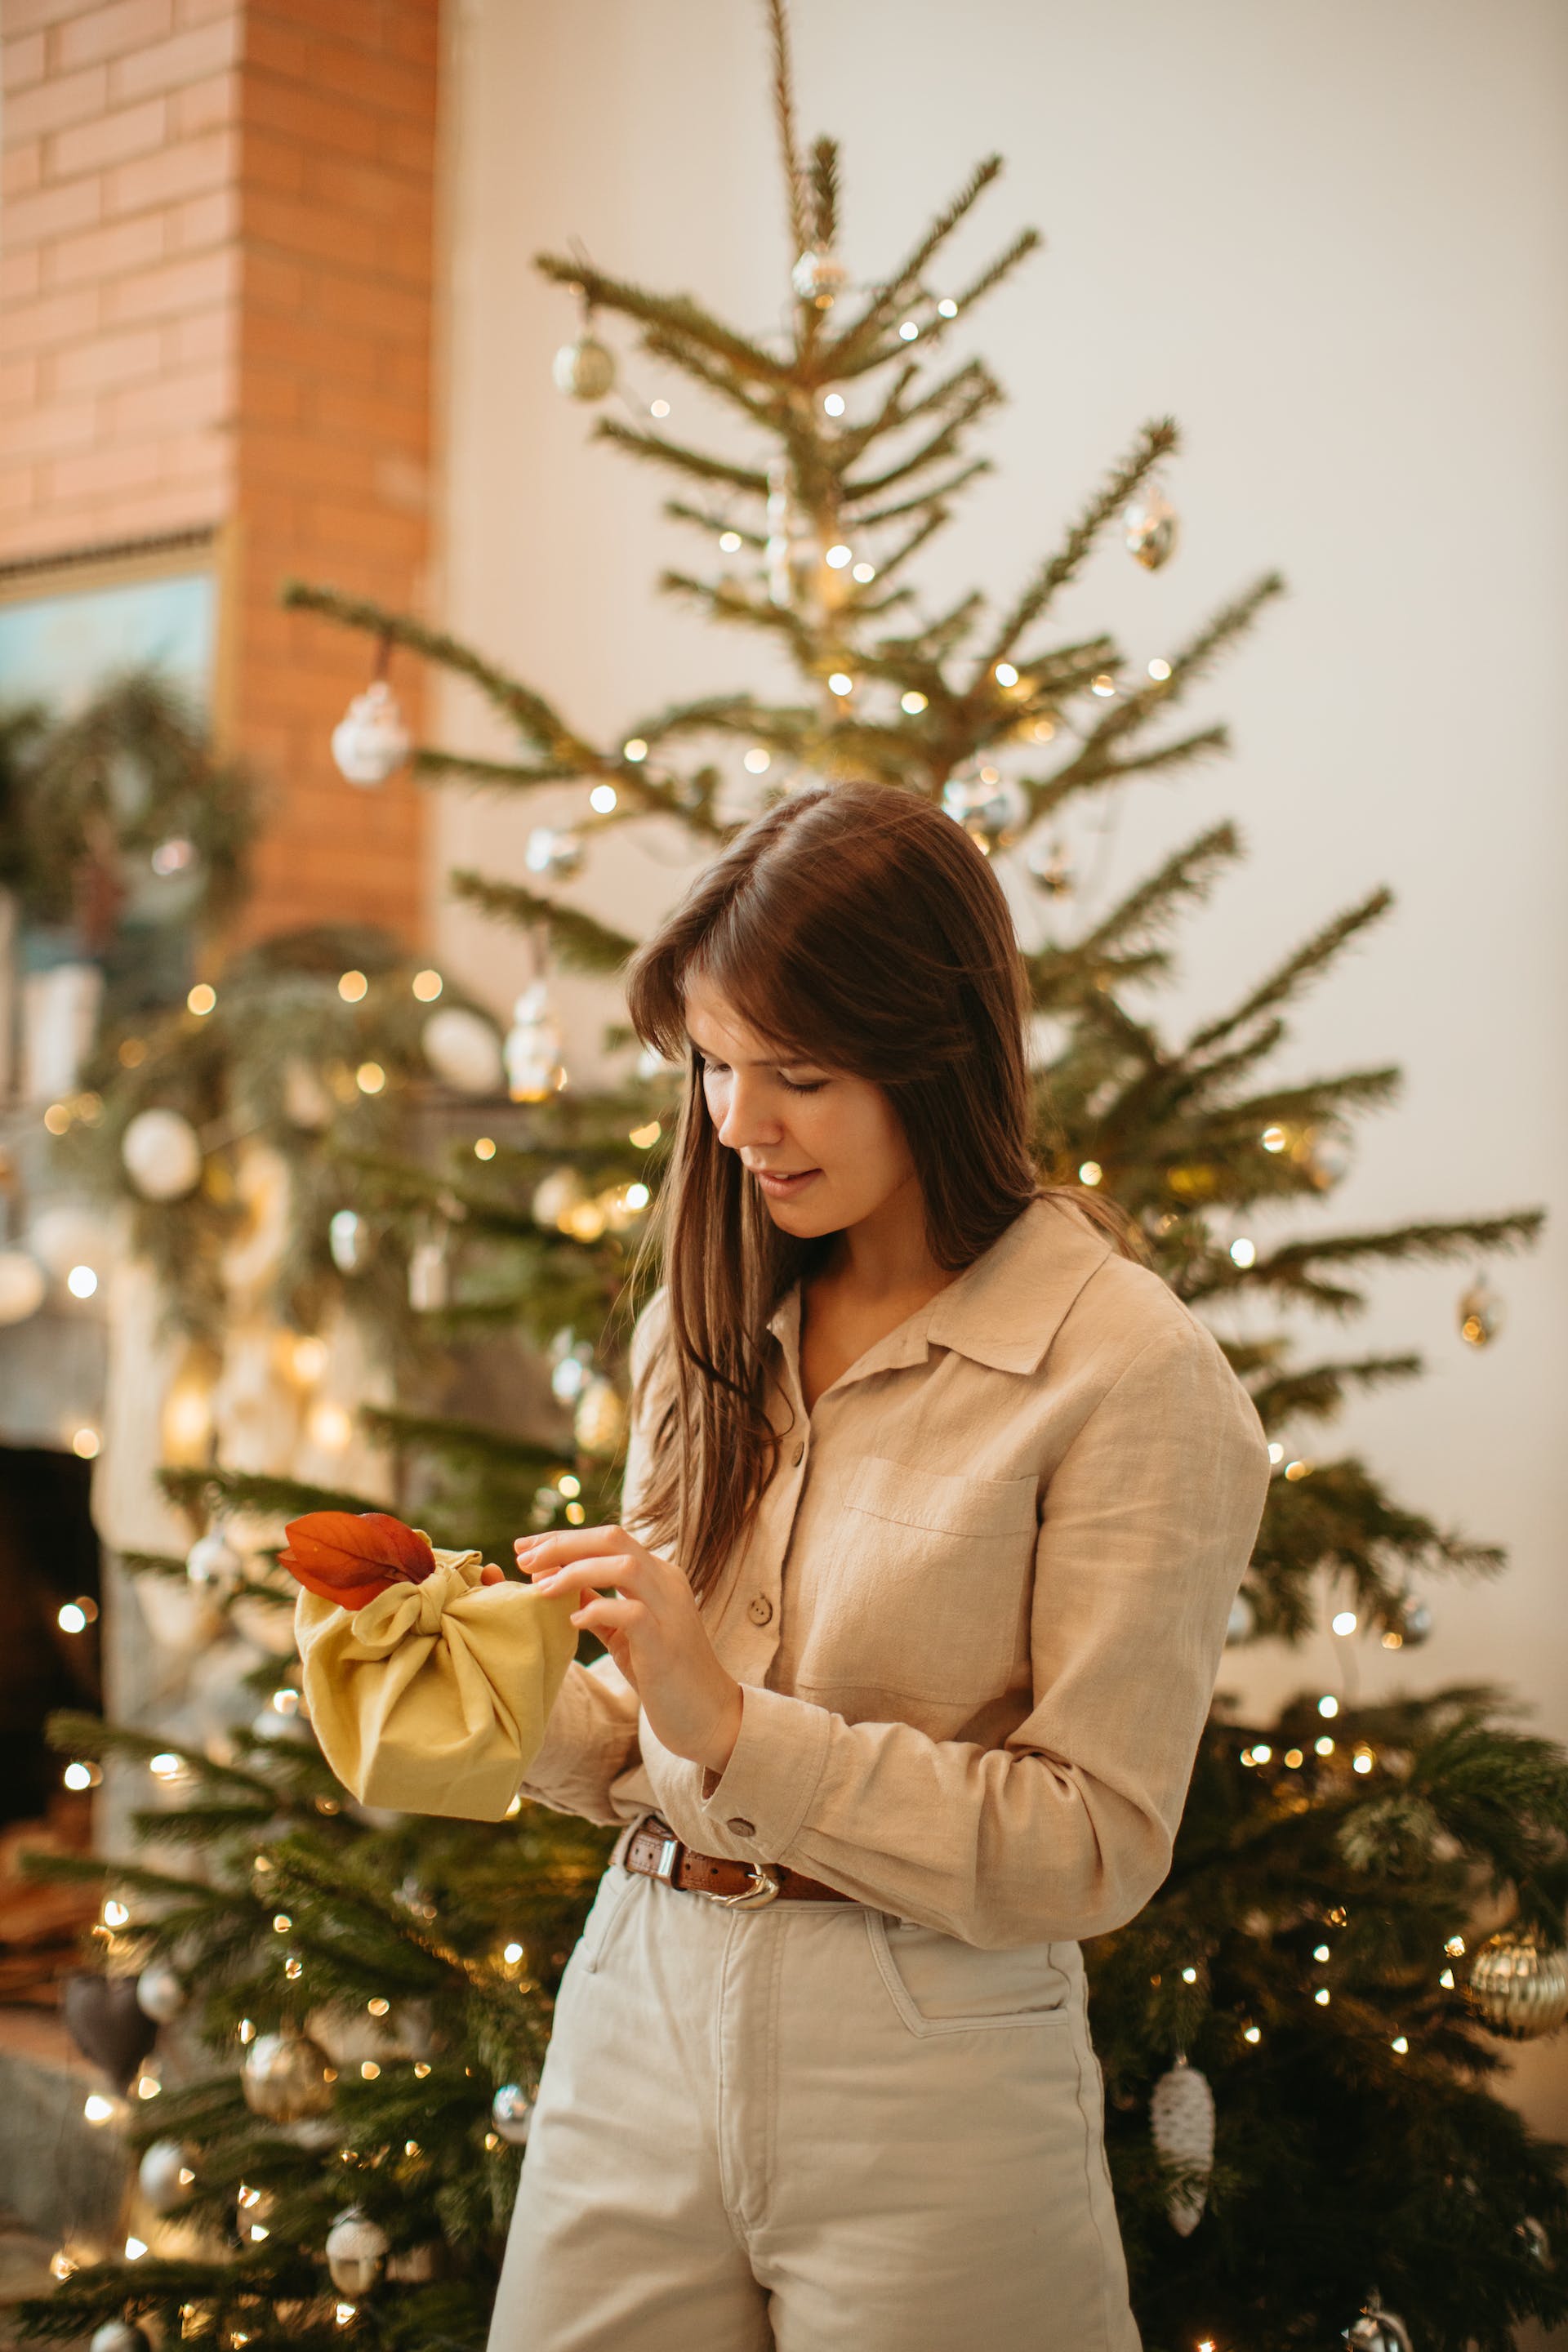 Une femme ouvrant son cadeau de Noël | Source : Pexels